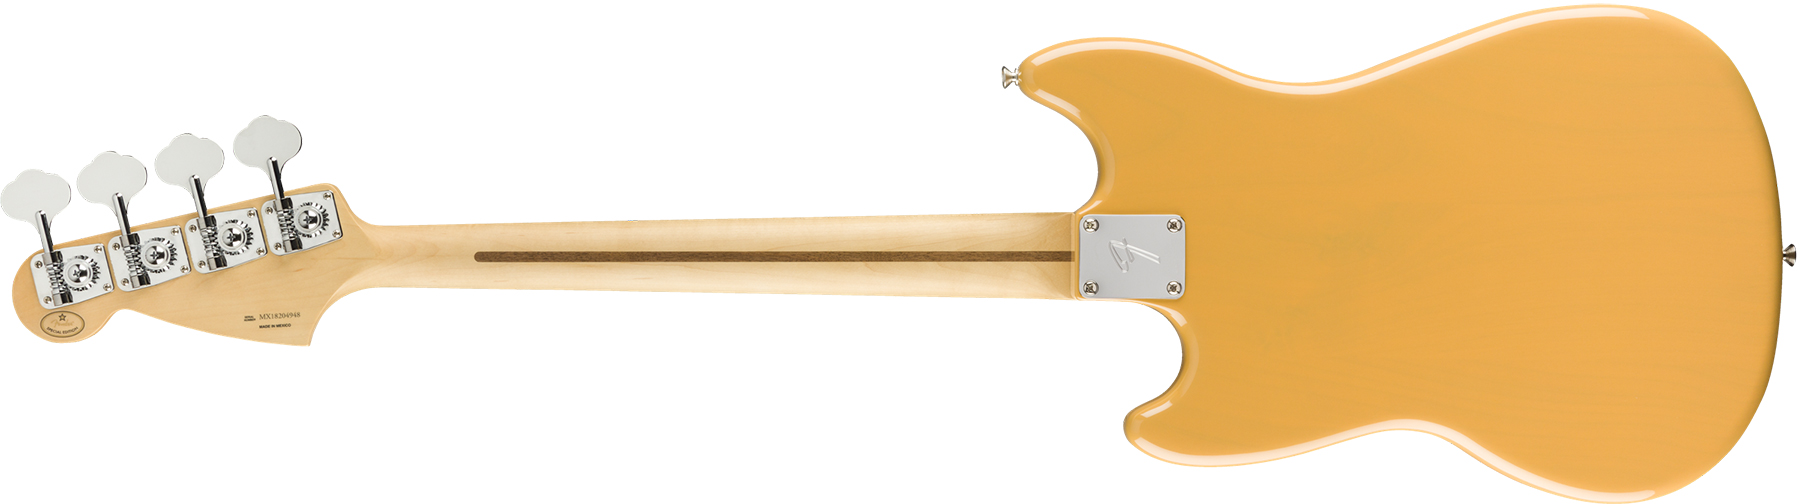 Fender Mustang Bass Pj Player Ltd Mex Mn - Butterscotch Blonde - E-Bass für Kinder - Variation 1